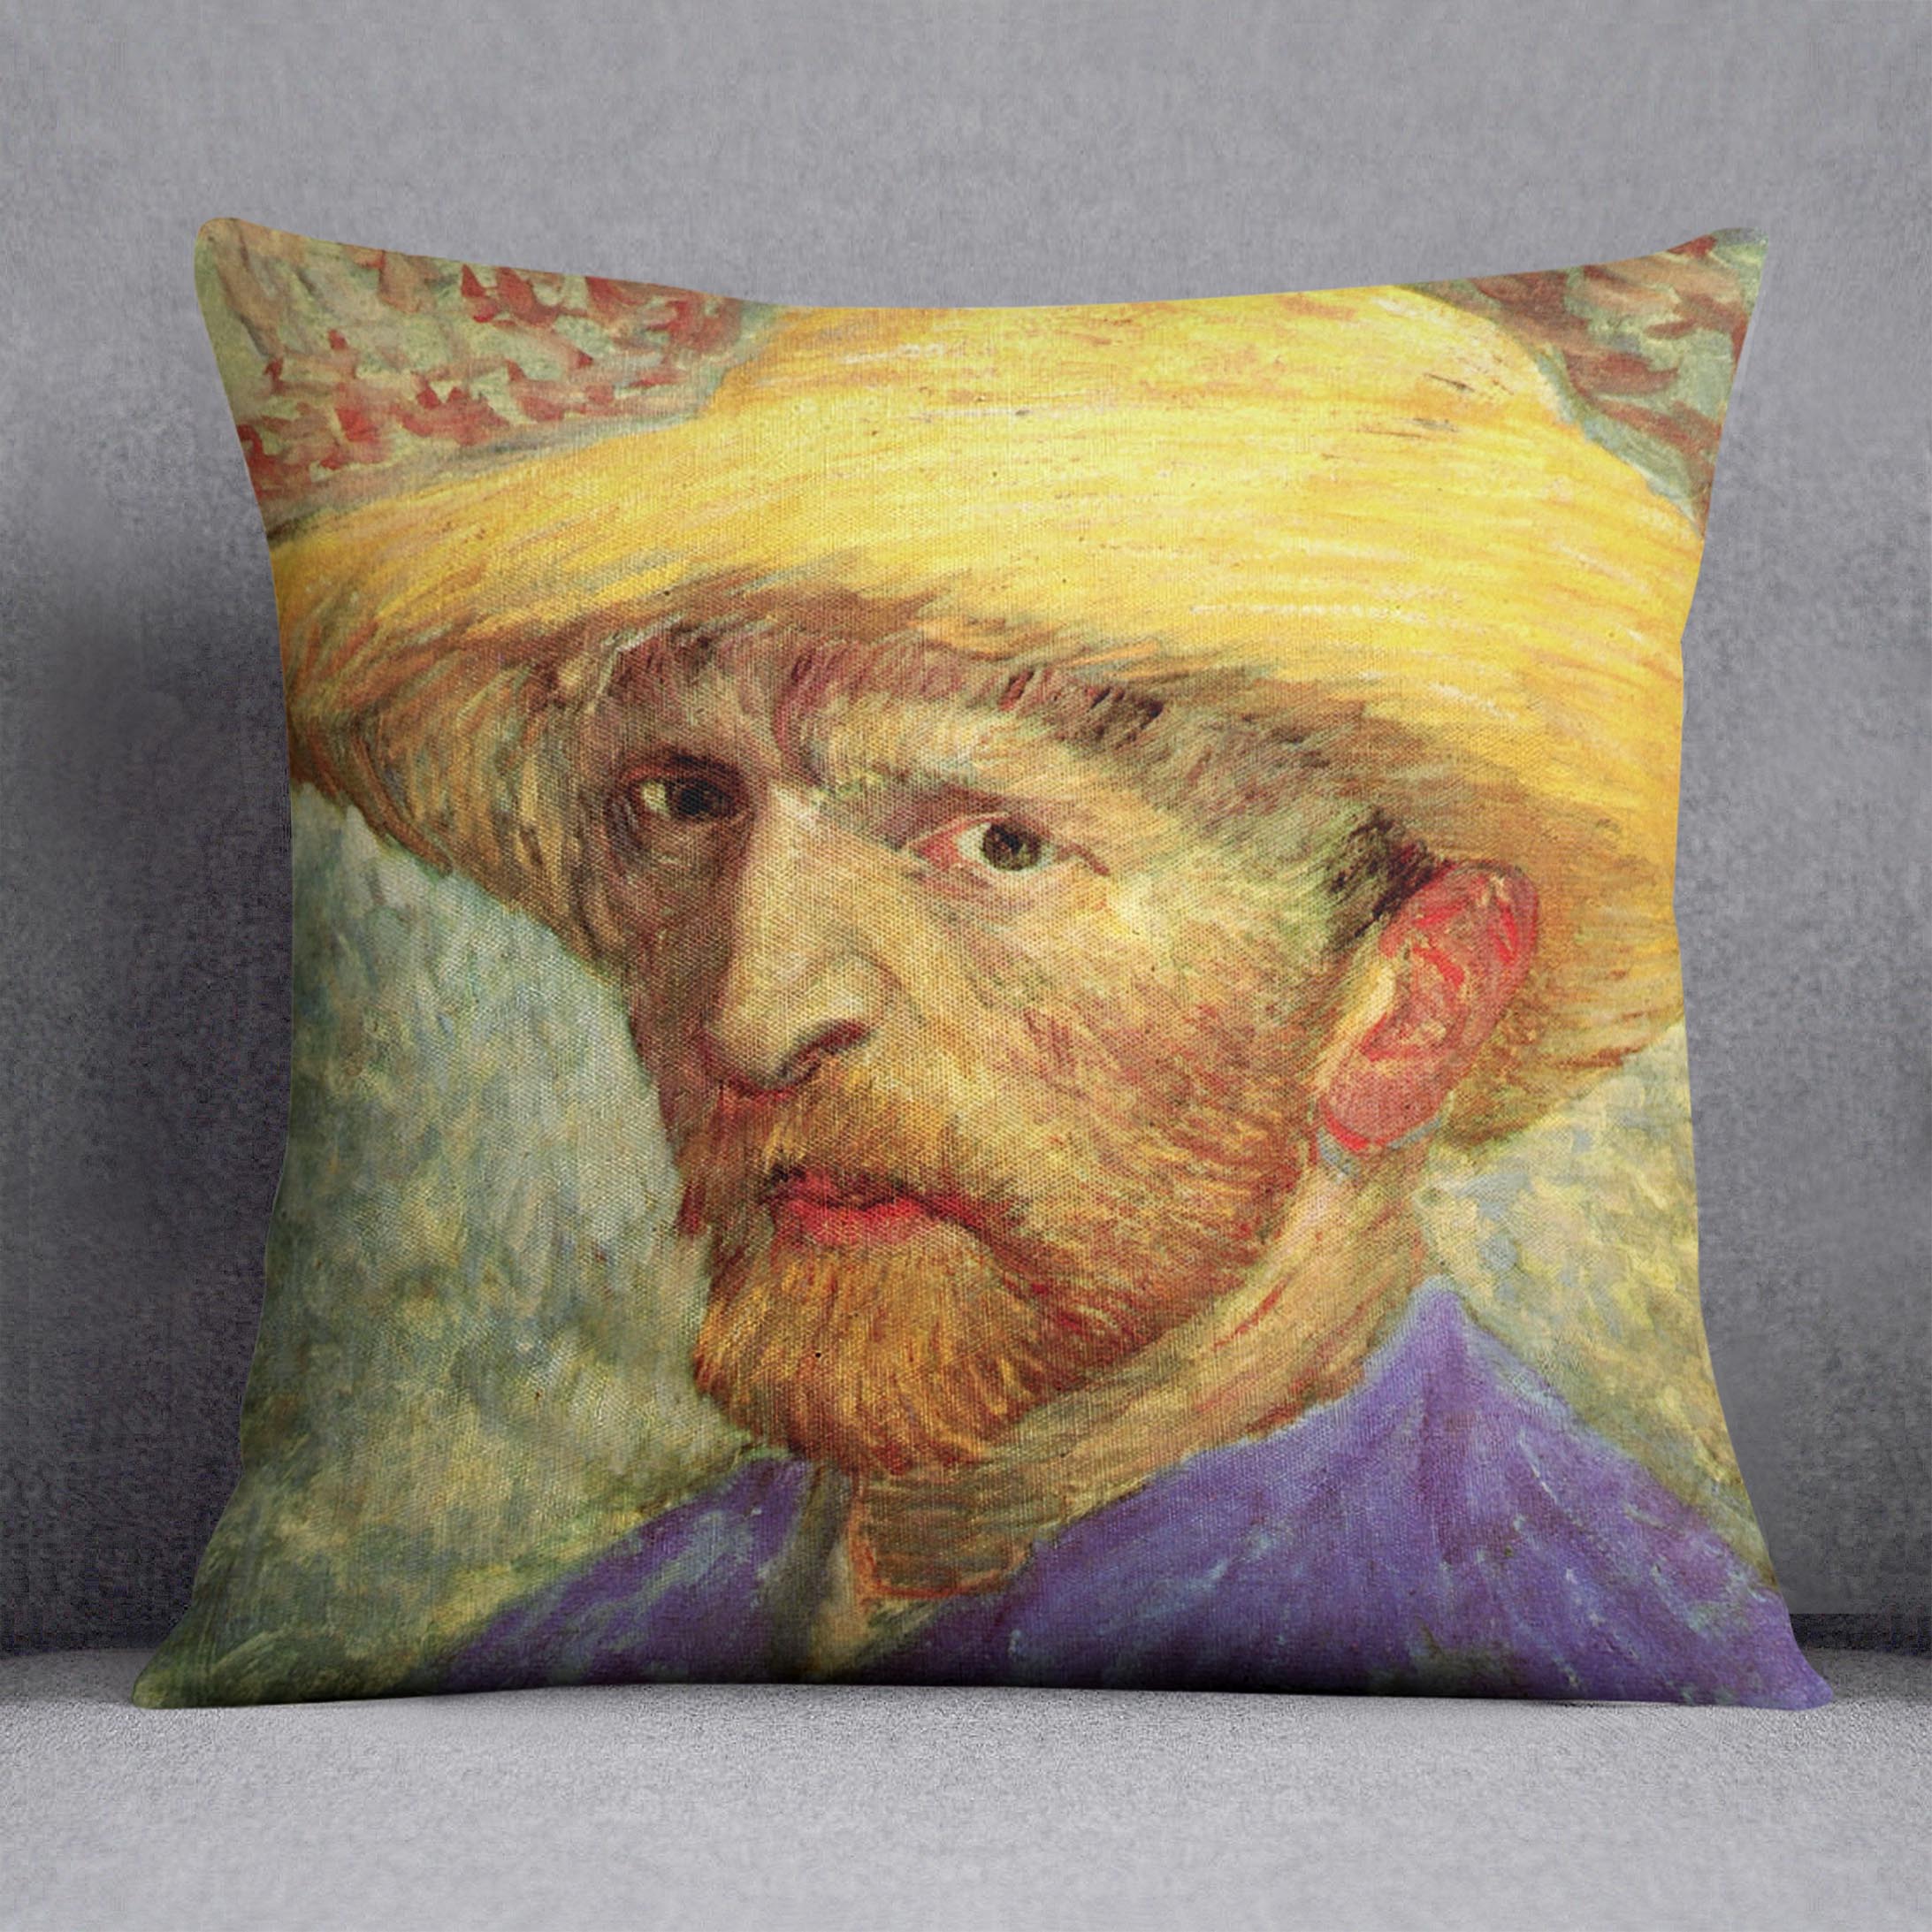 Self-Portrait with Straw Hat 3 by Van Gogh Cushion